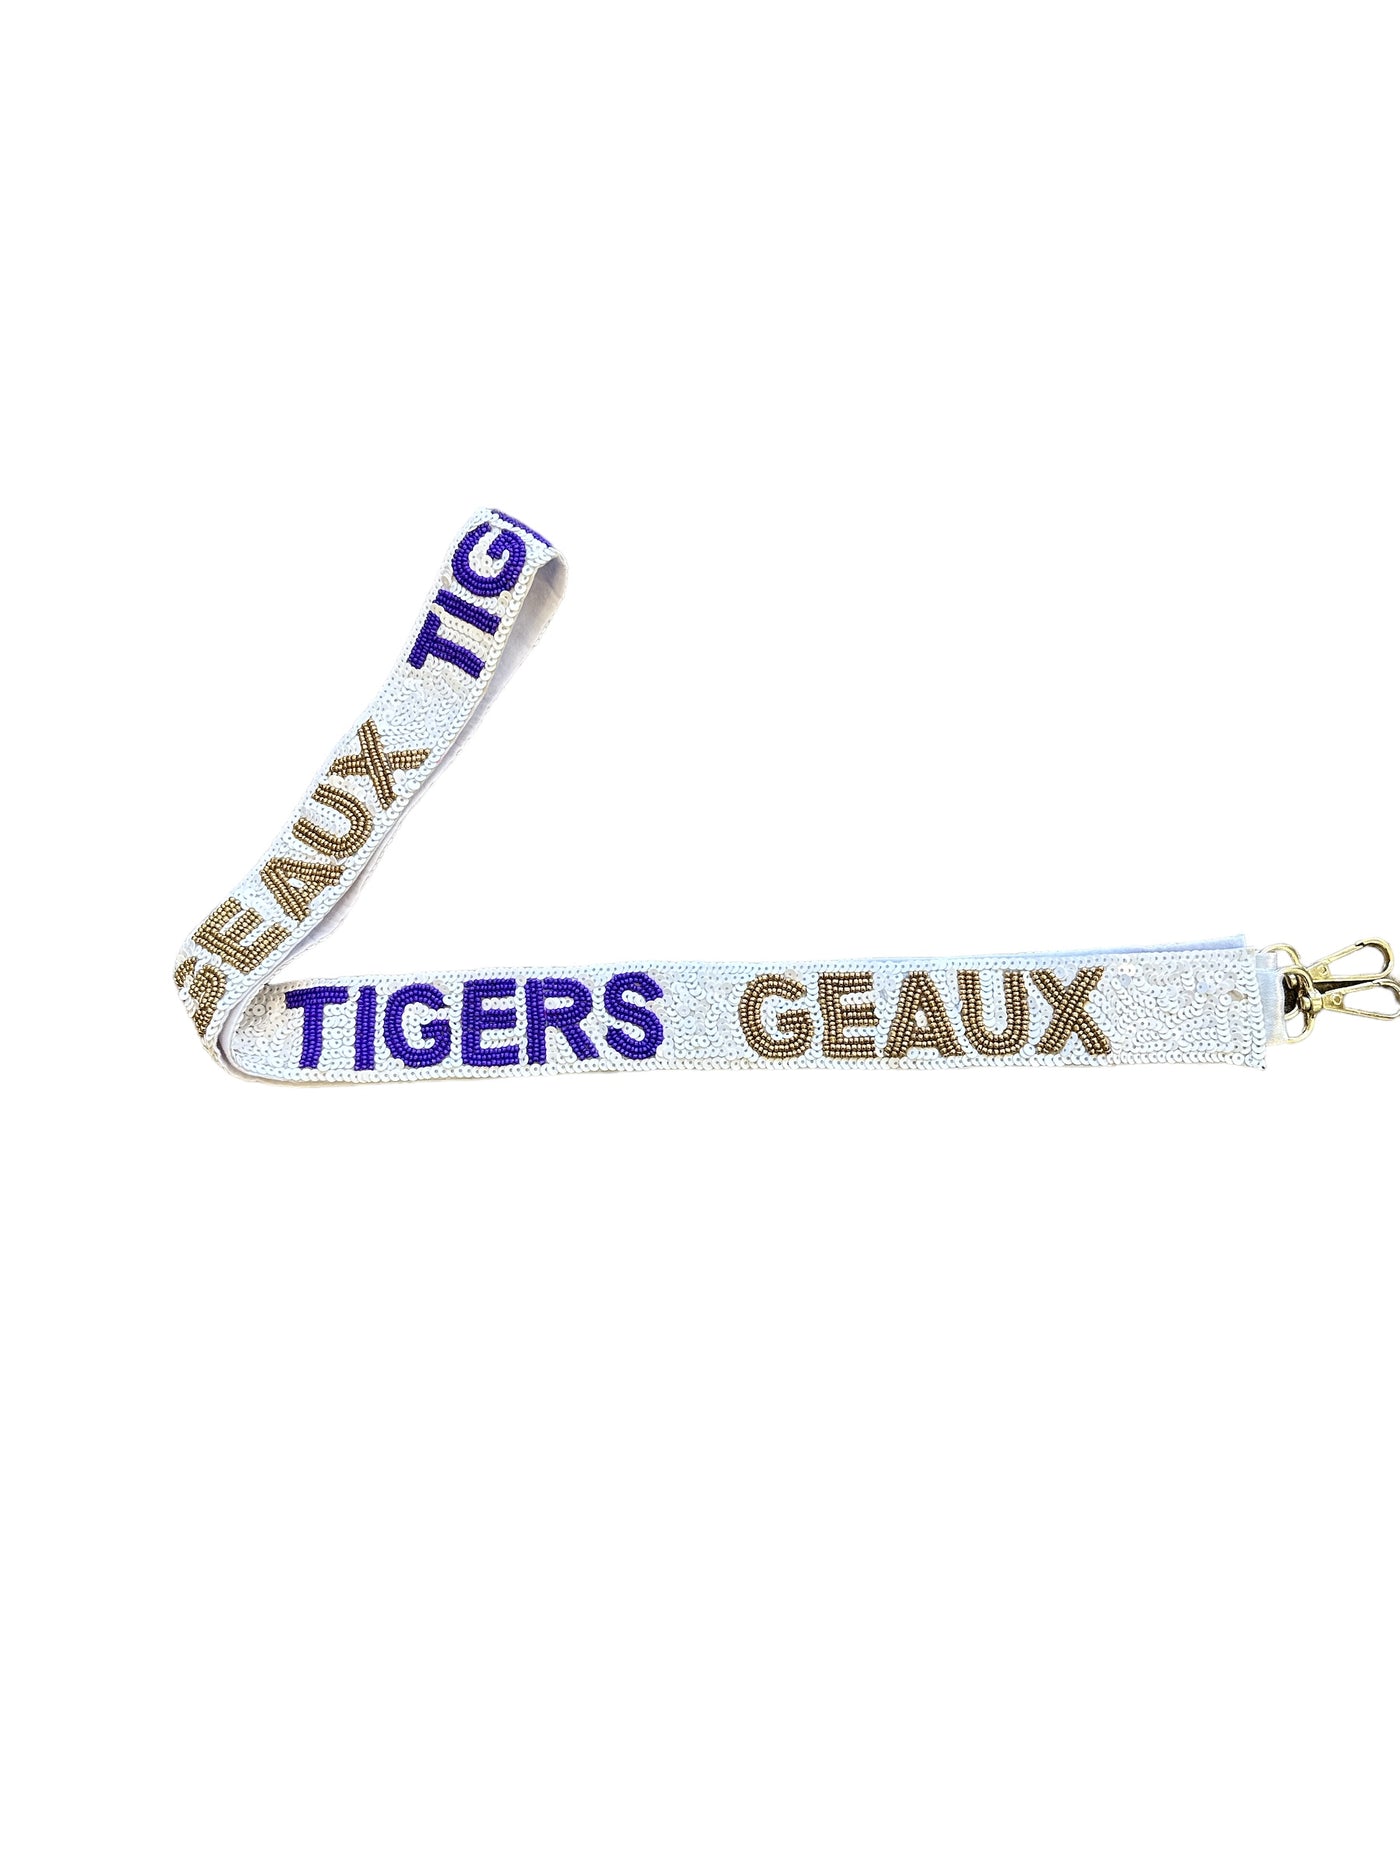 Sequin Bag Strap - Geaux Tigers